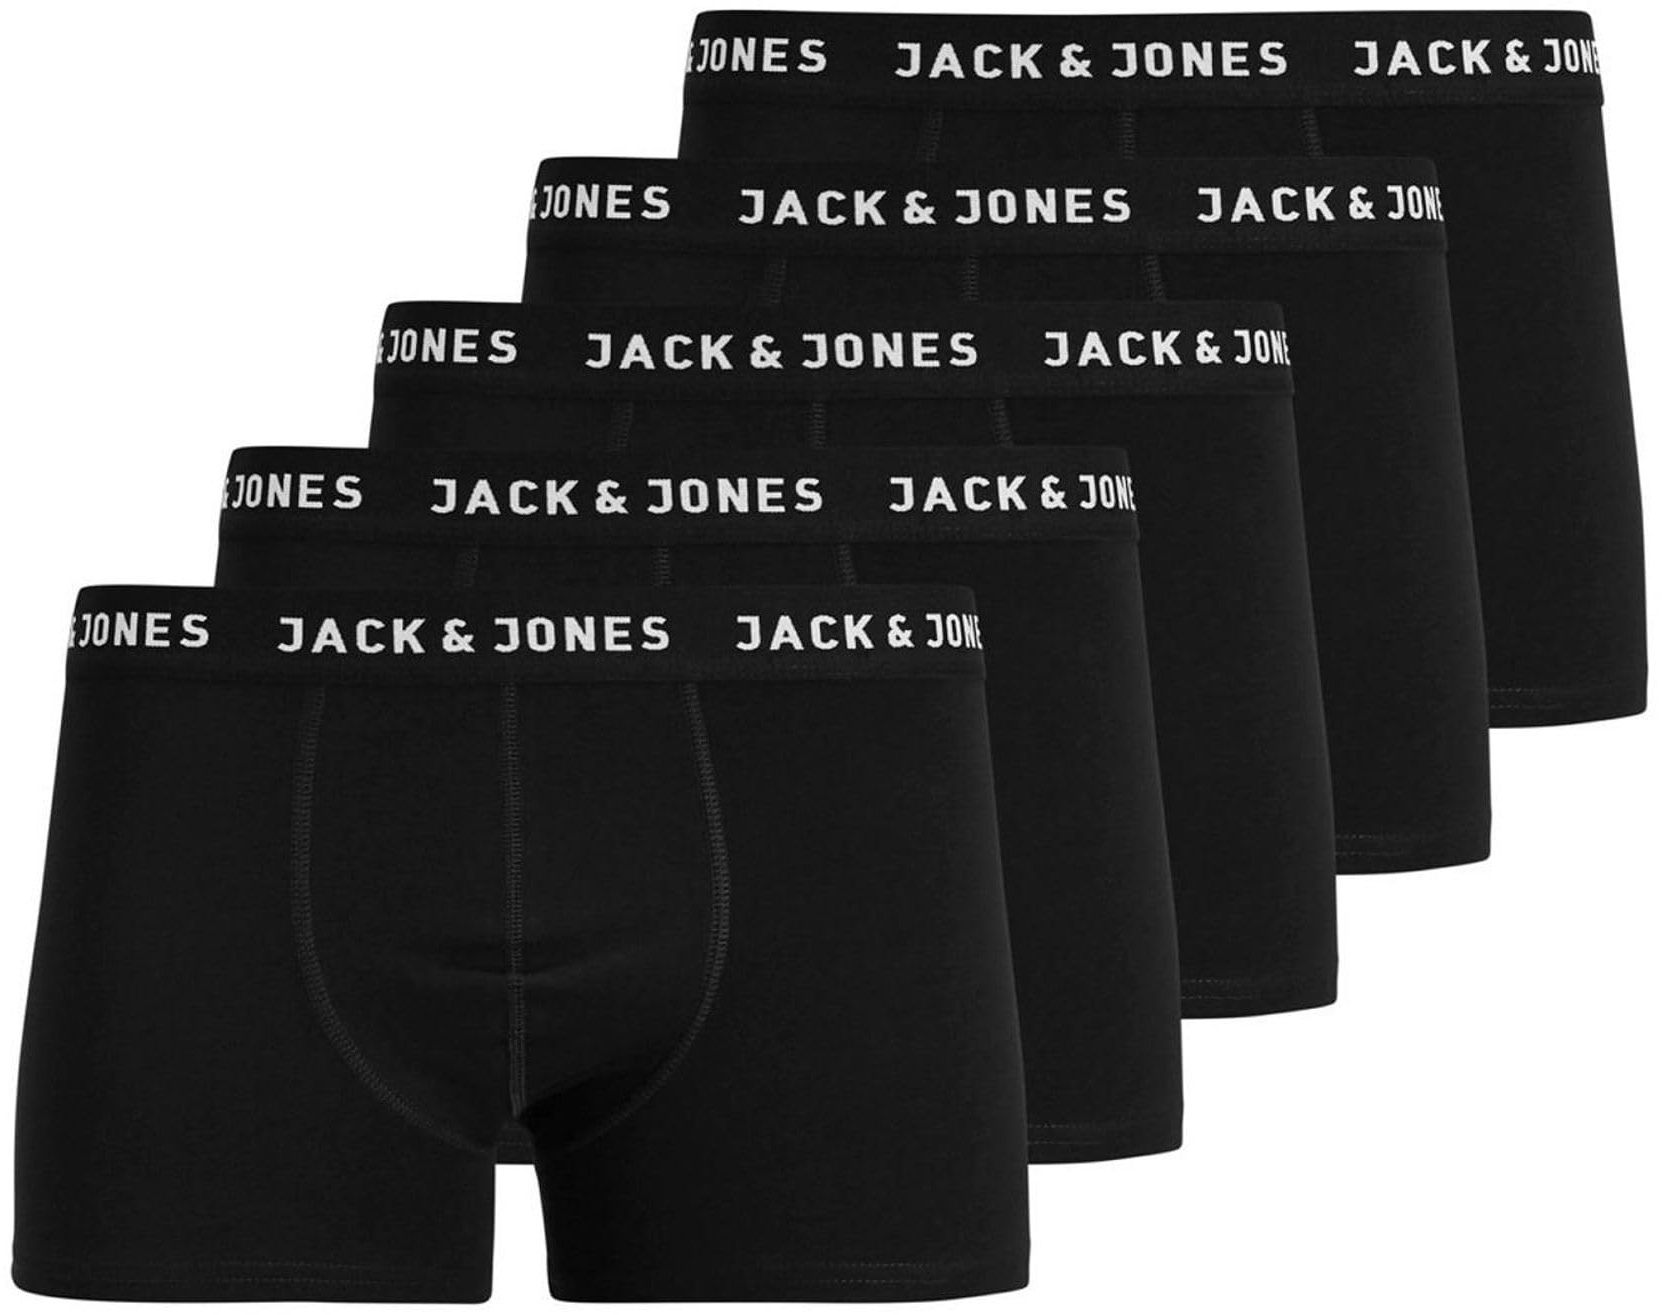 JACK&JONES JUNIOR Jungen Jachuey Trunks 5 Pack Noos Jnr Boxer Shorts, Black/Pack:black - Black Black Black, 164 EU